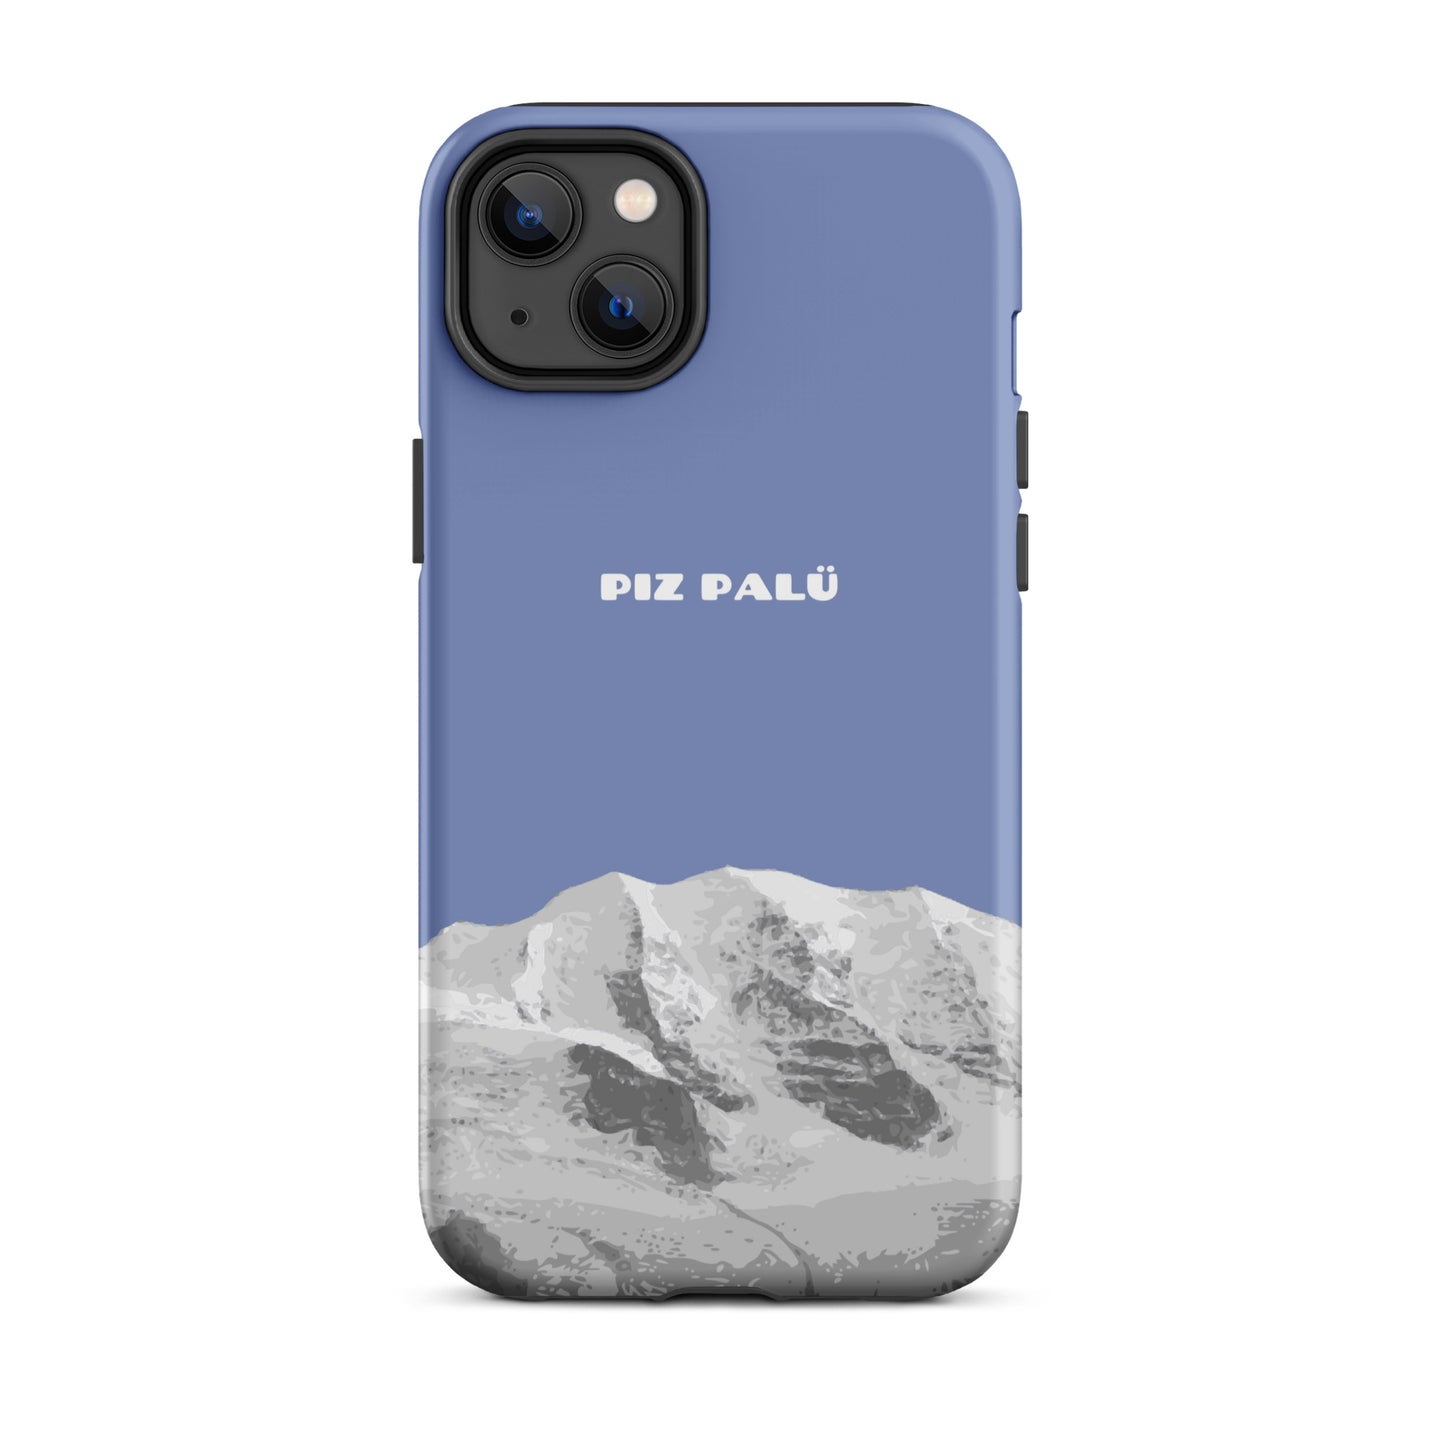 Hülle für das iPhone 14 Plus von Apple in der Farbe Pastellblau, dass den Piz Palü in Graubünden zeigt.